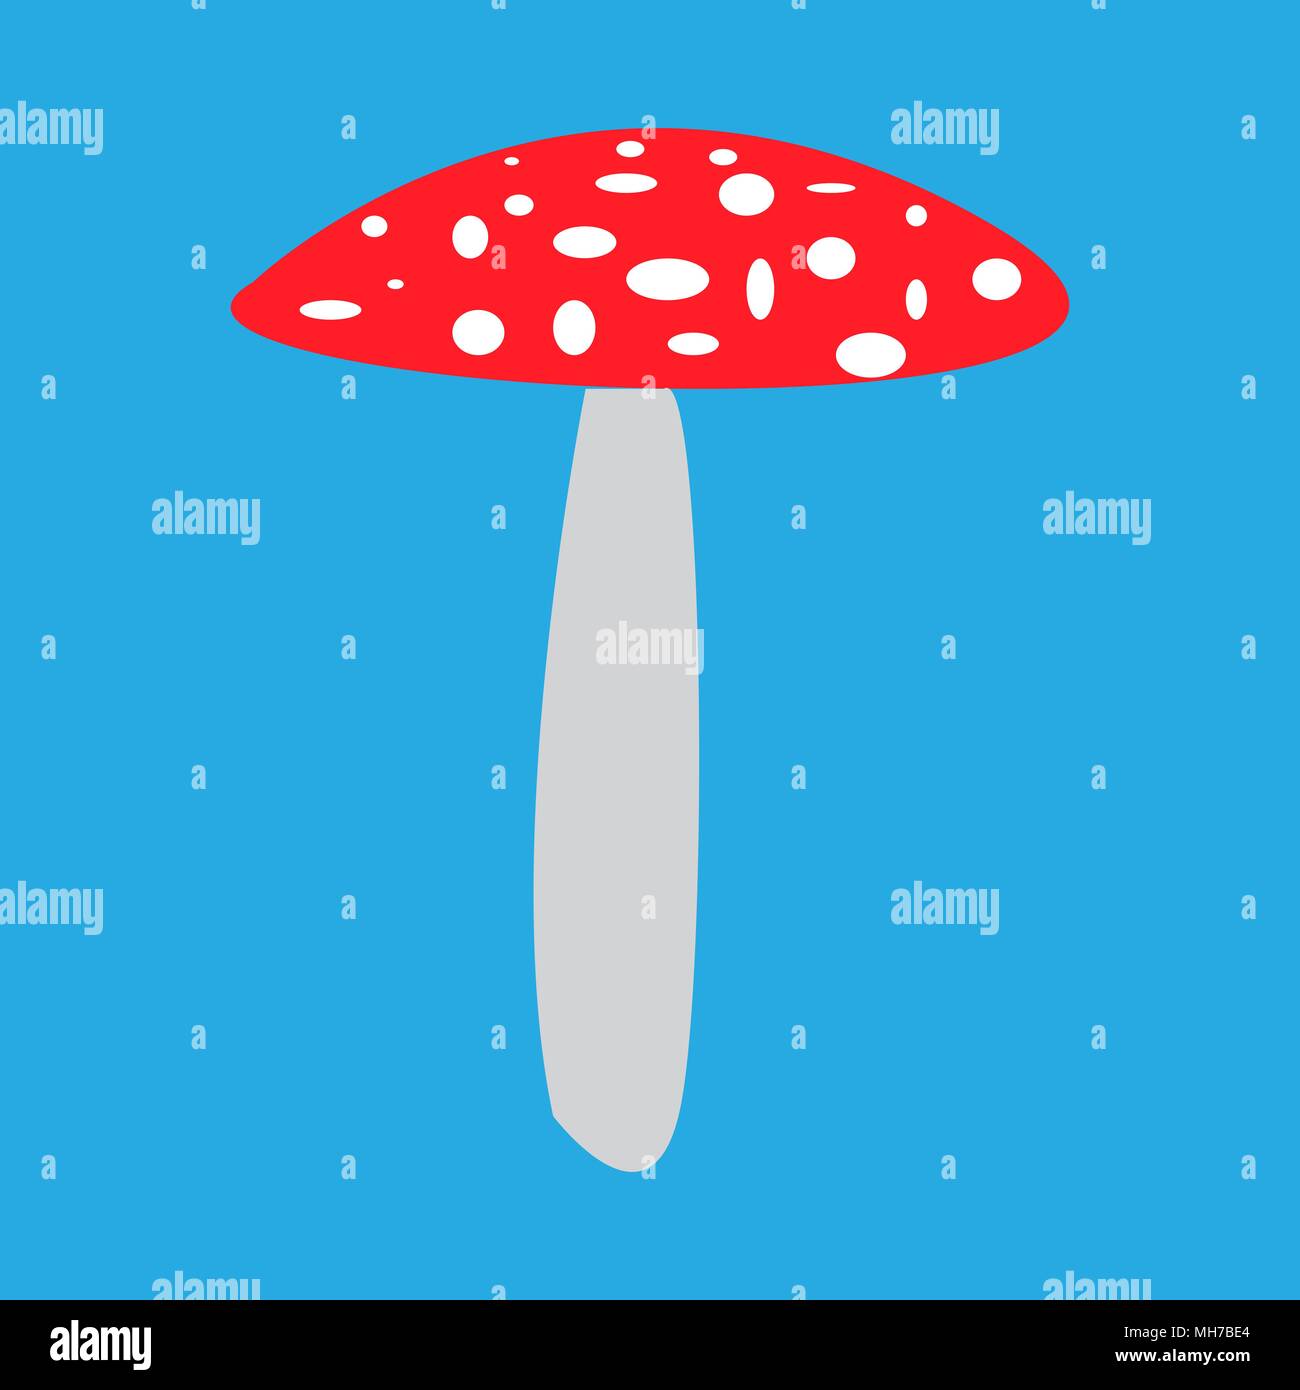 mushroom fly agaric vector illustration Stock Vector